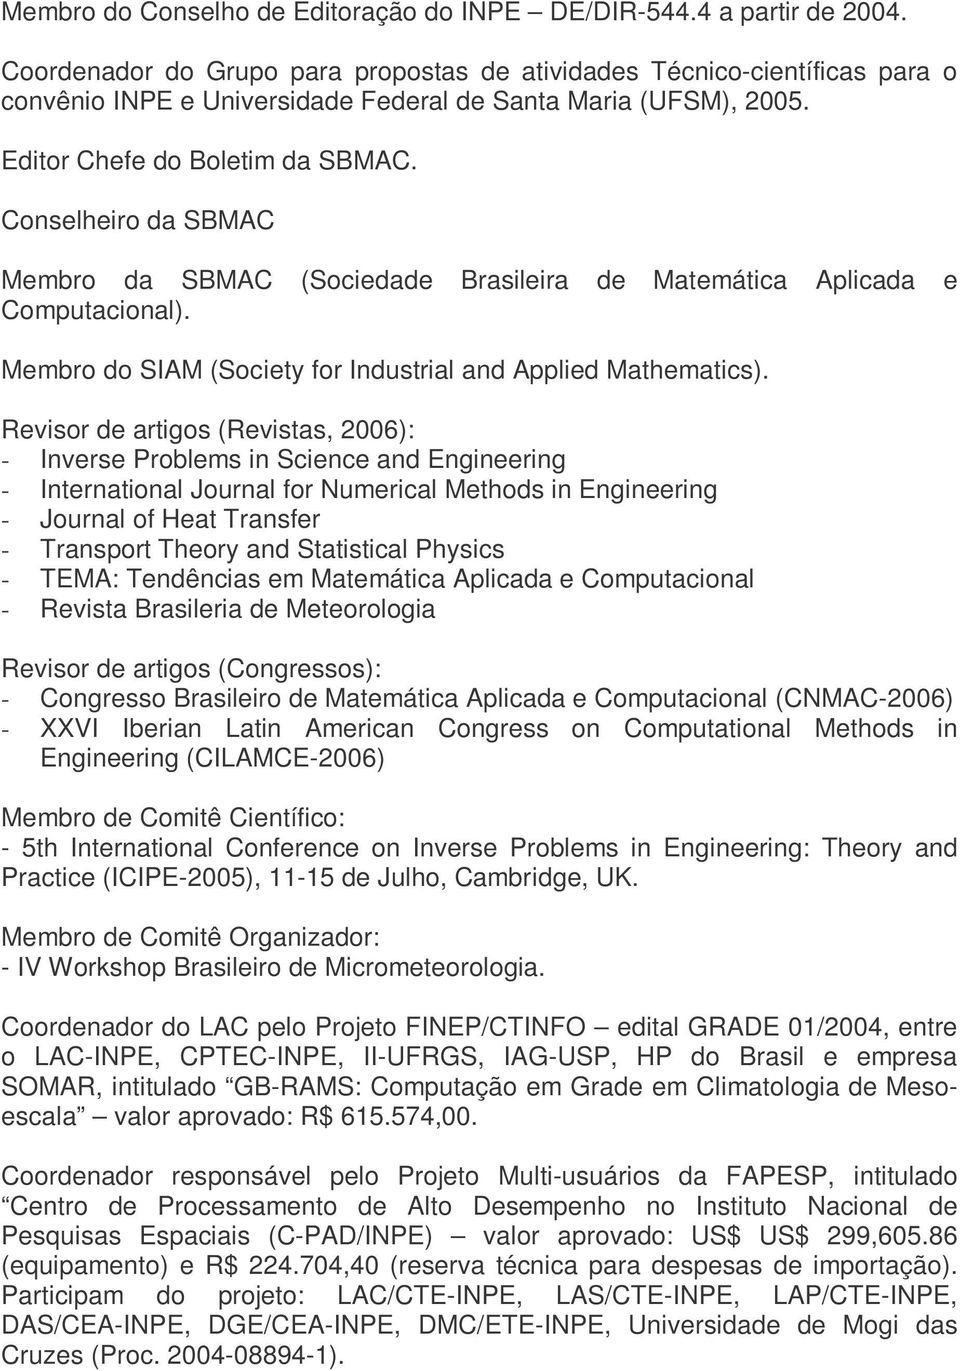 Conselheiro da SBMAC Membro da SBMAC (Sociedade Brasileira de Matemática Aplicada e Computacional). Membro do SIAM (Society for Industrial and Applied Mathematics).